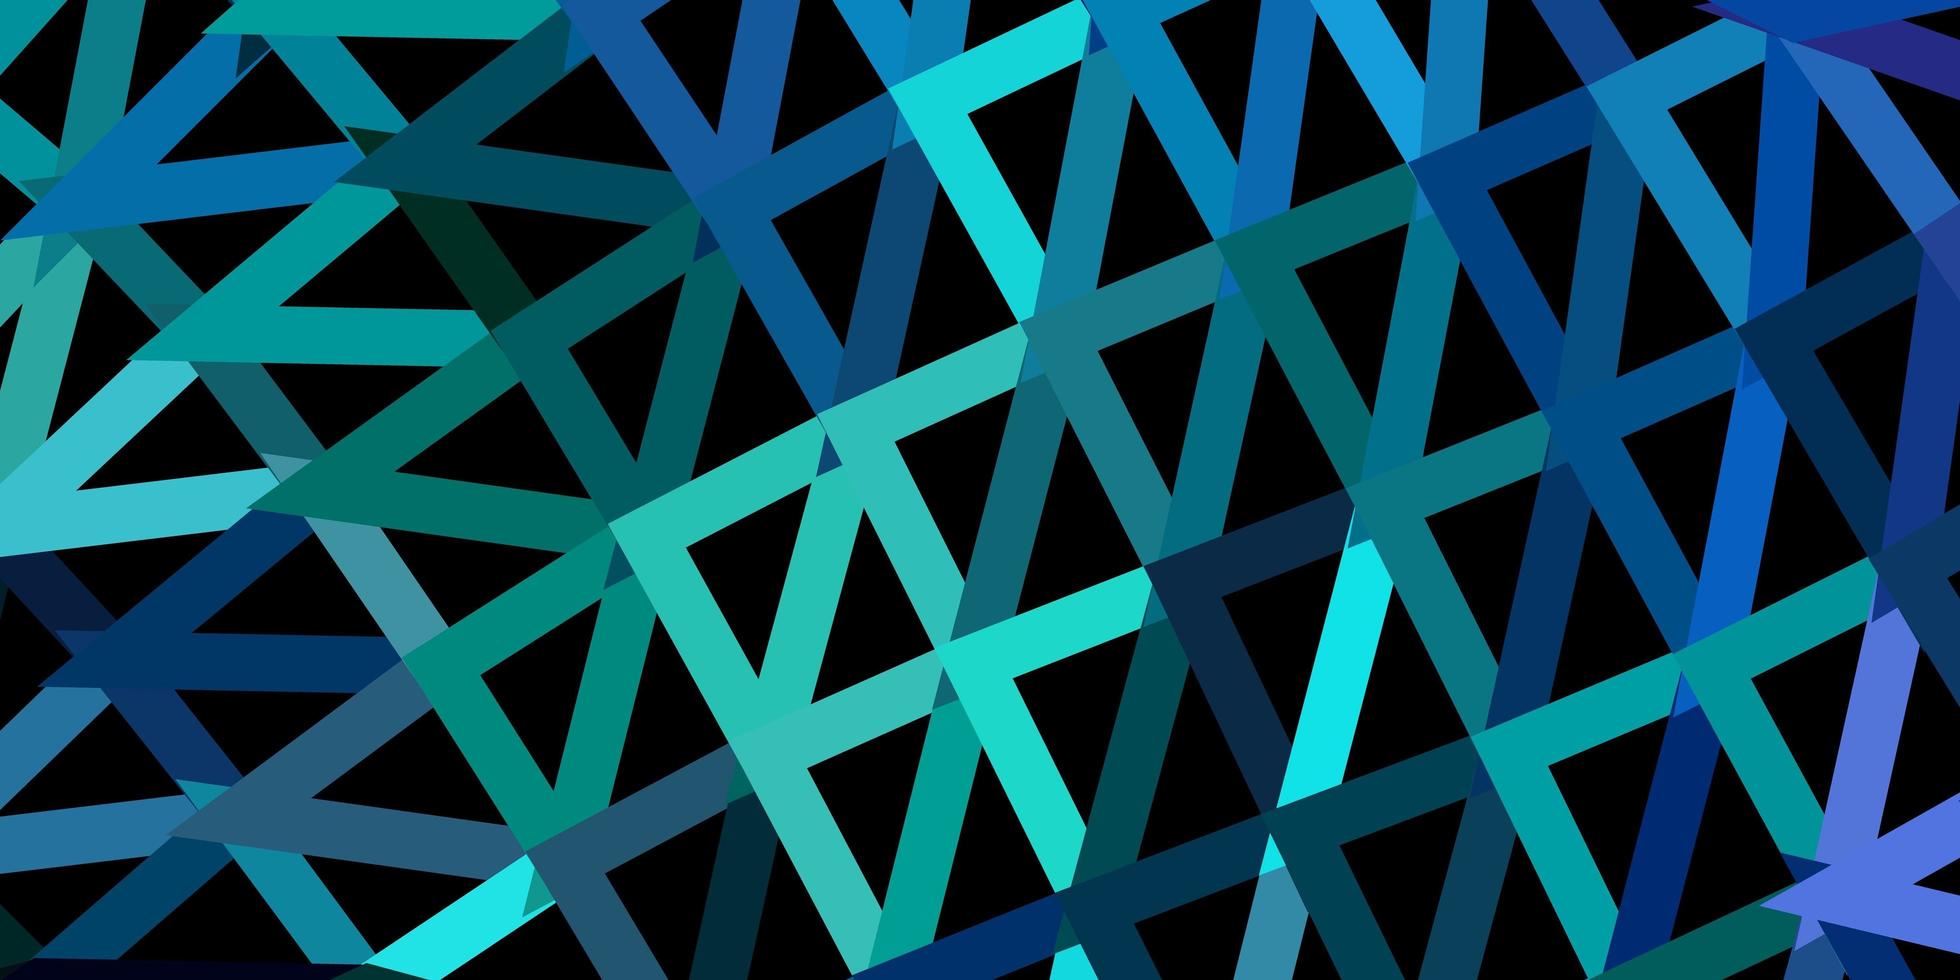 struttura astratta del triangolo di vettore blu chiaro